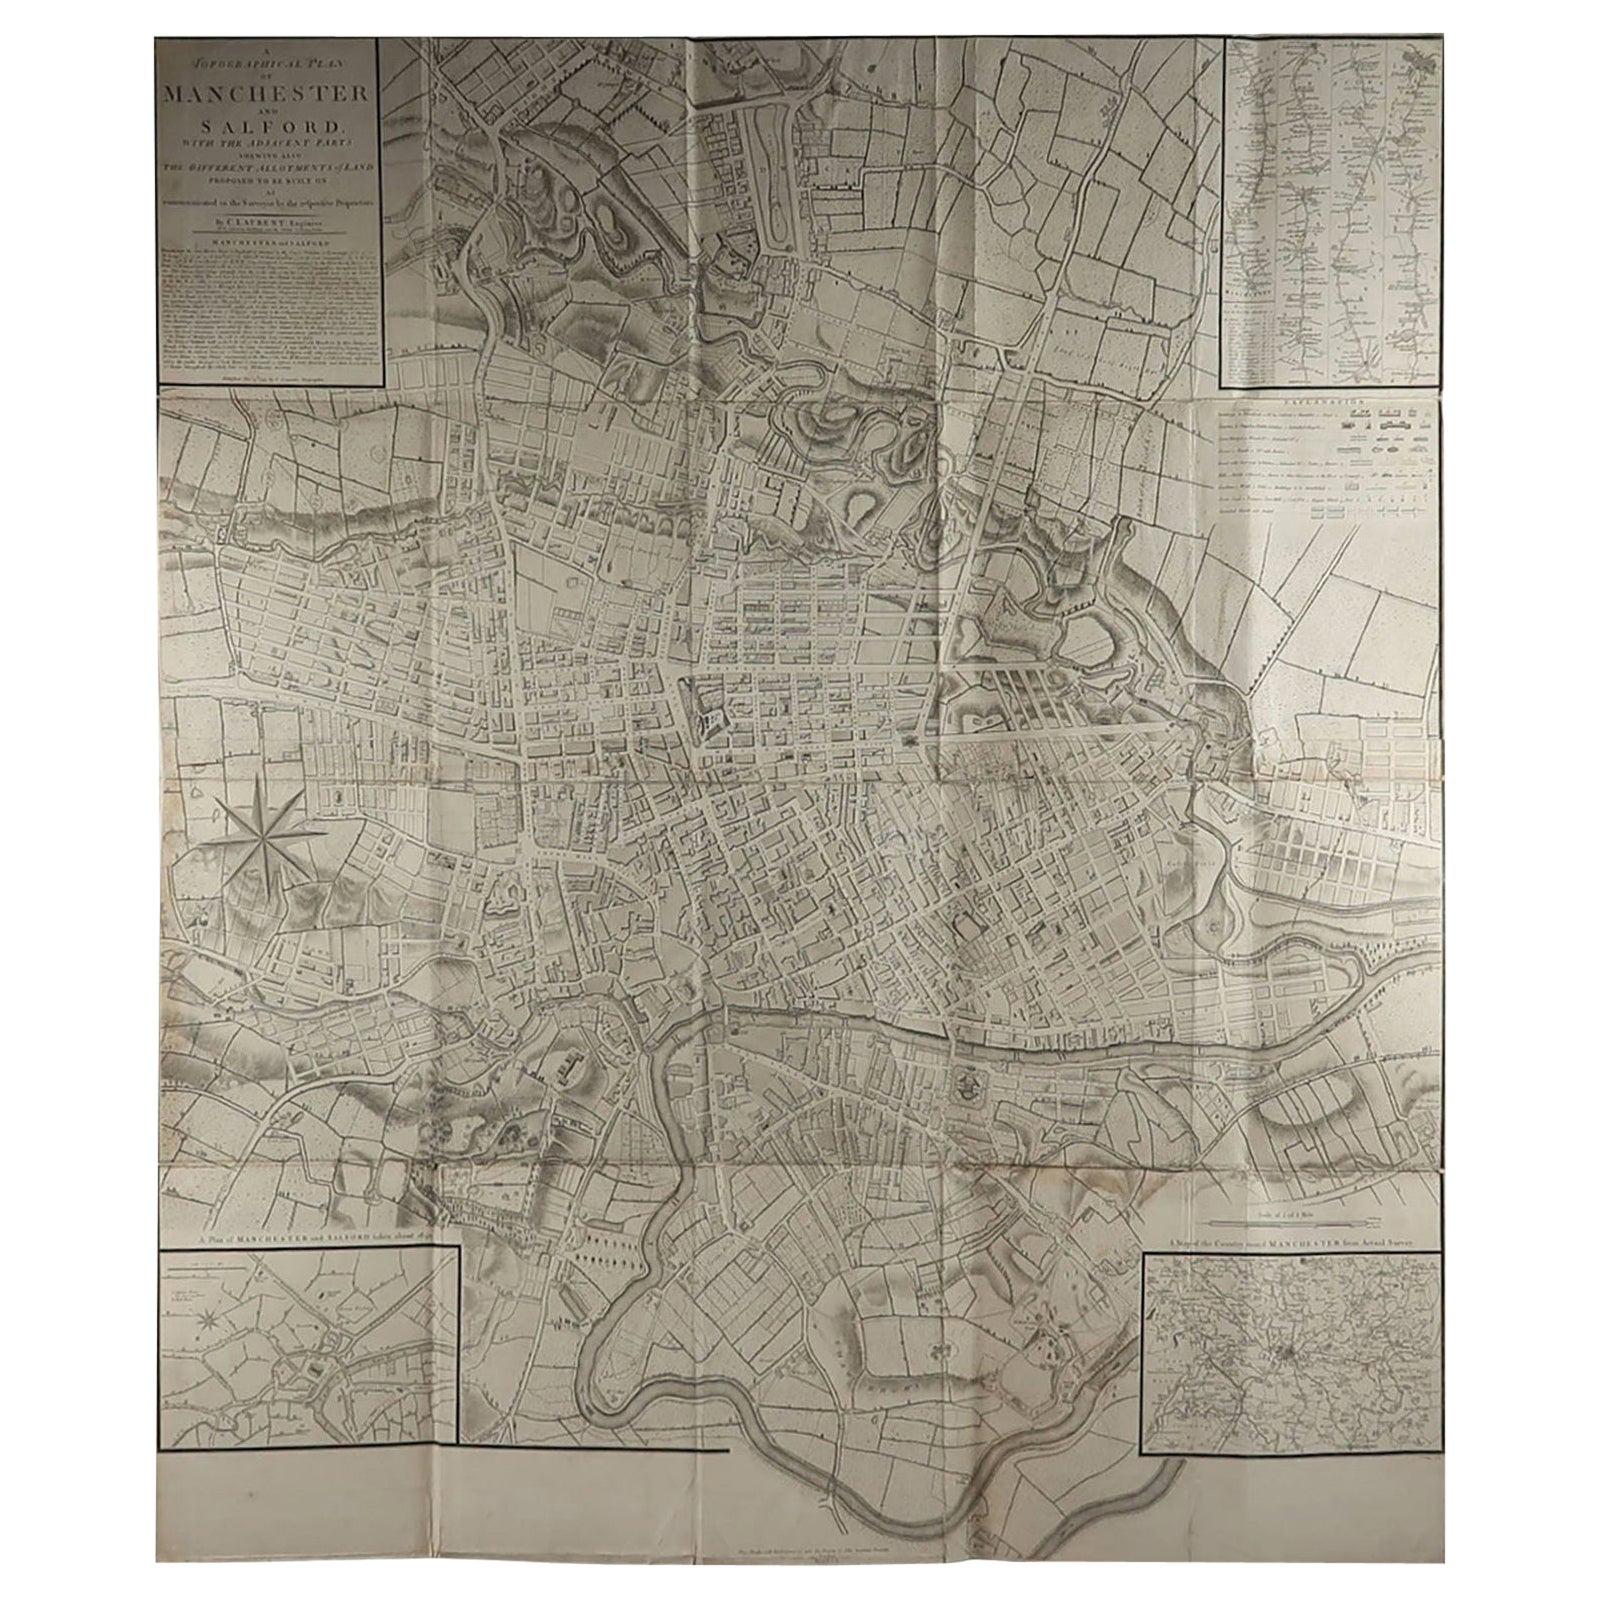 Grande carte pliante originale et ancienne de Manchester, Royaume-Uni, datée de 1793